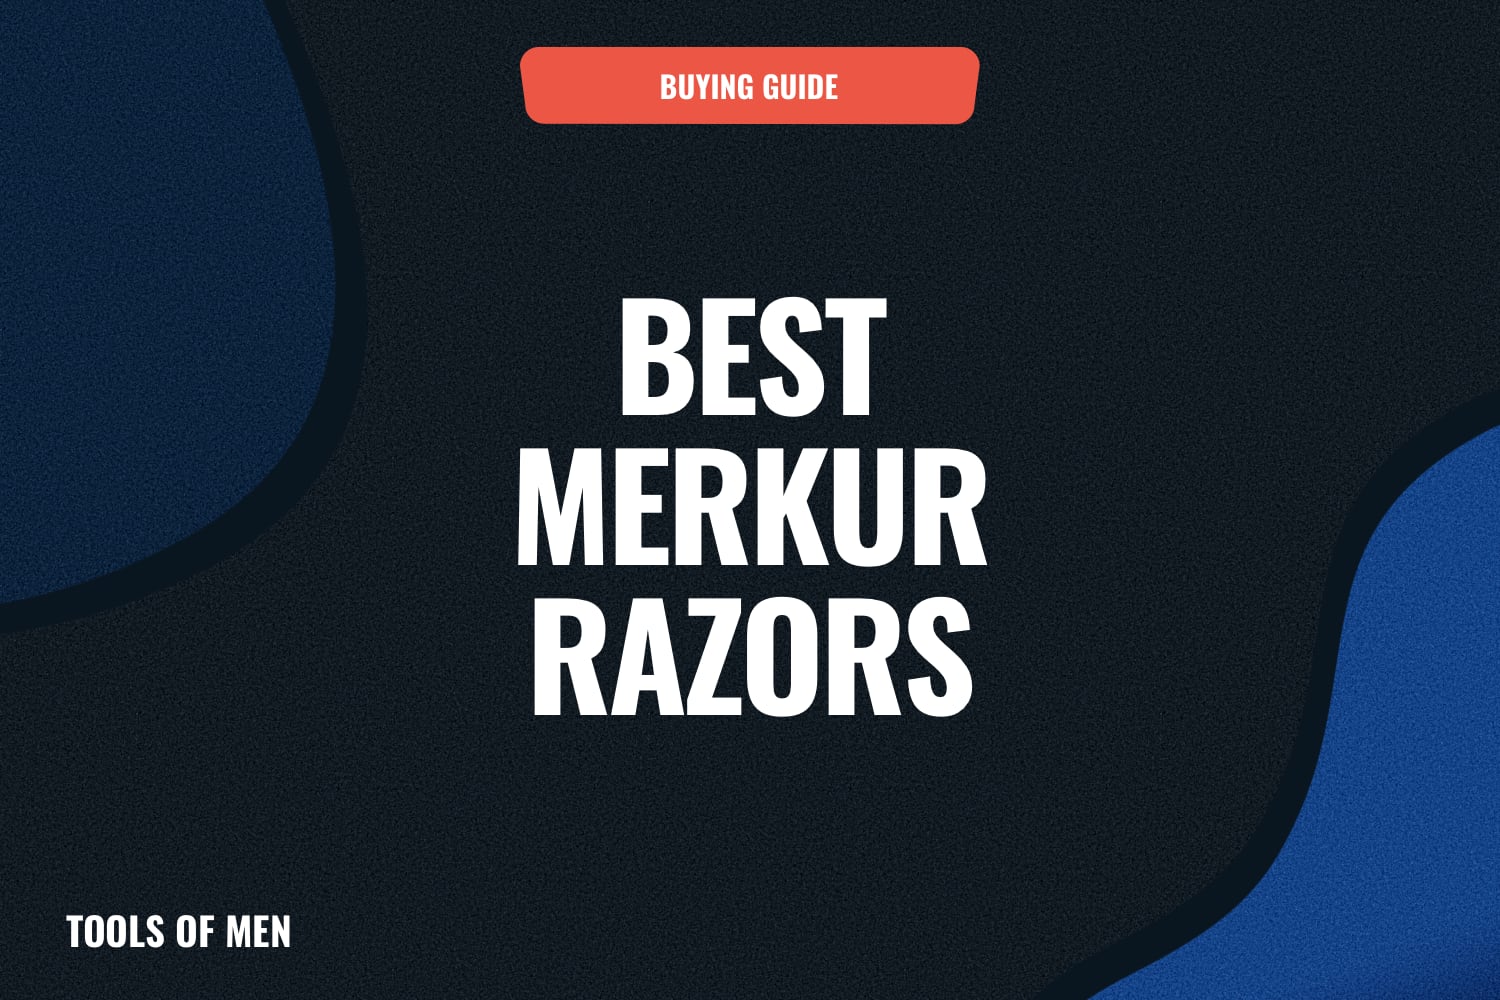 Best merkur razors feature image